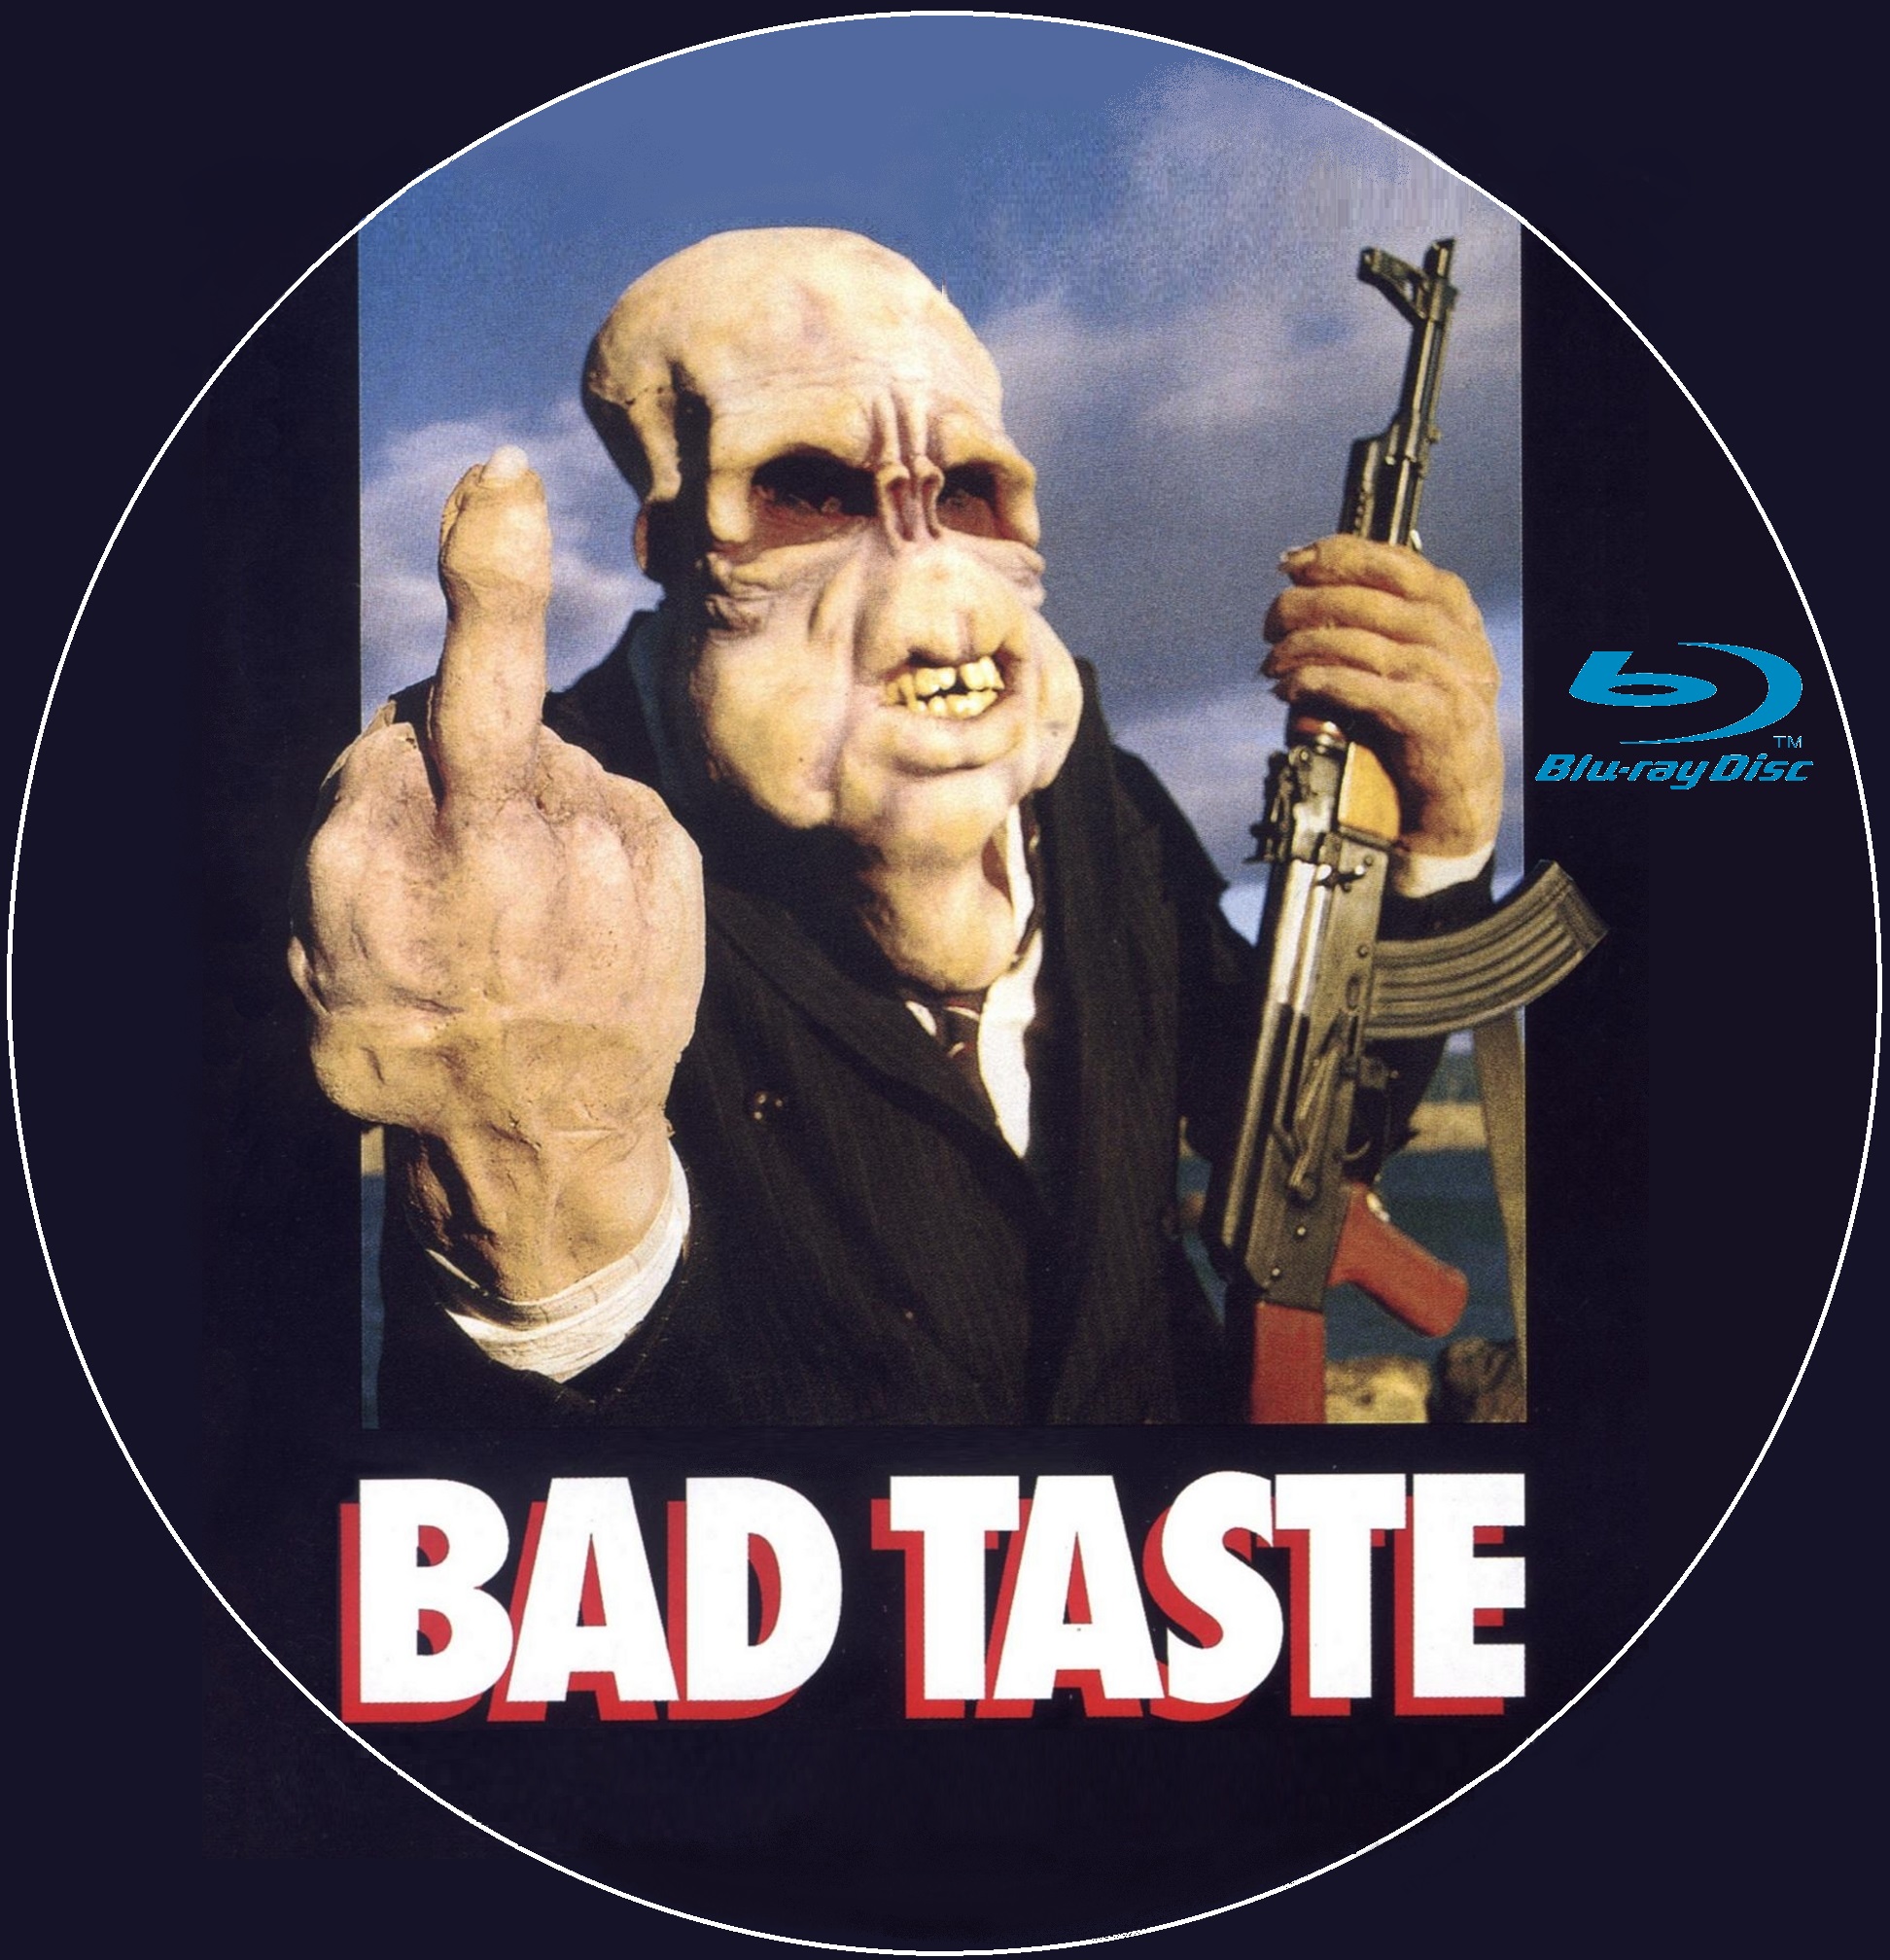 Bad taste custom (BLU-RAY)